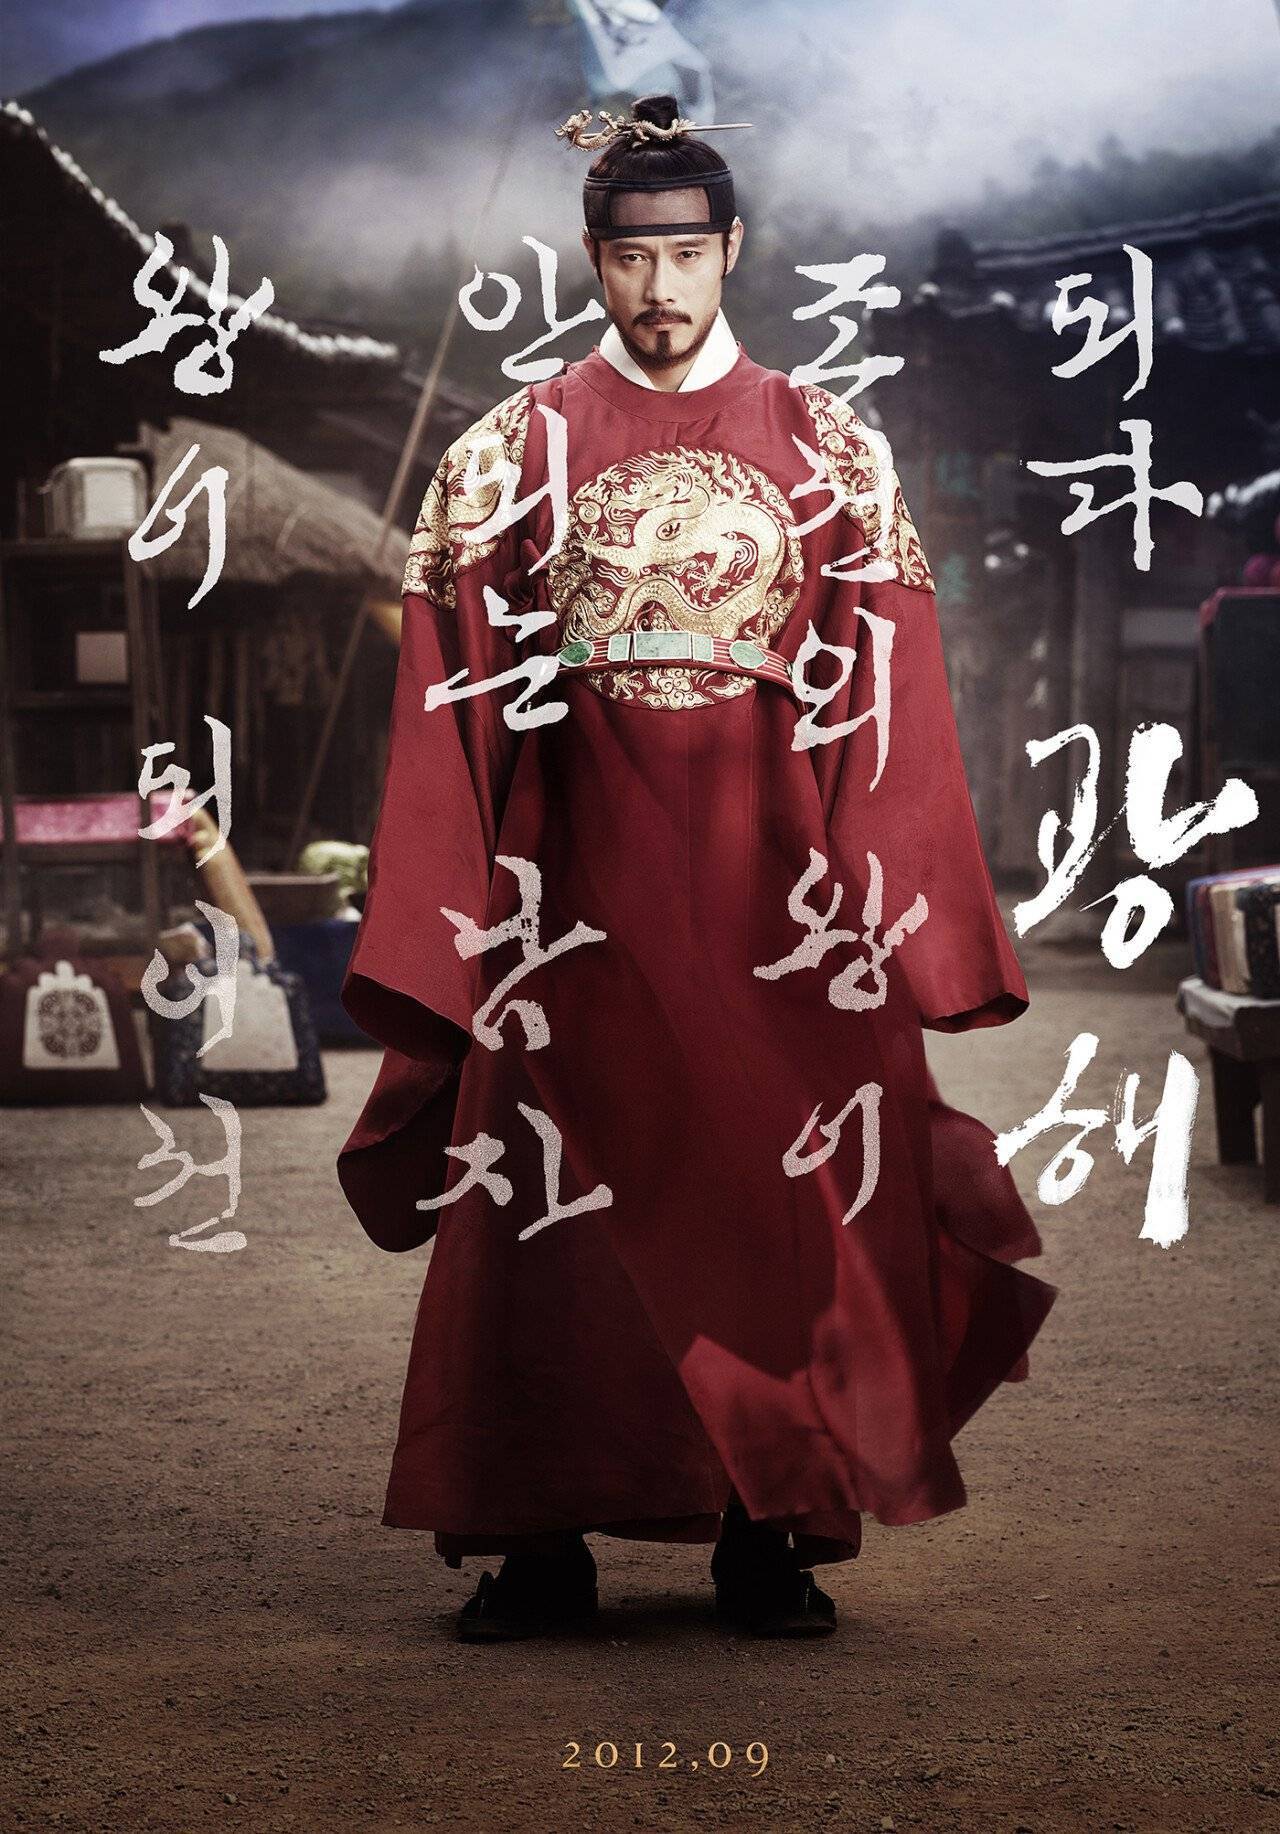 한국 스튜디오 '빛나는'에서 만든 영화 포스터들 | 인스티즈